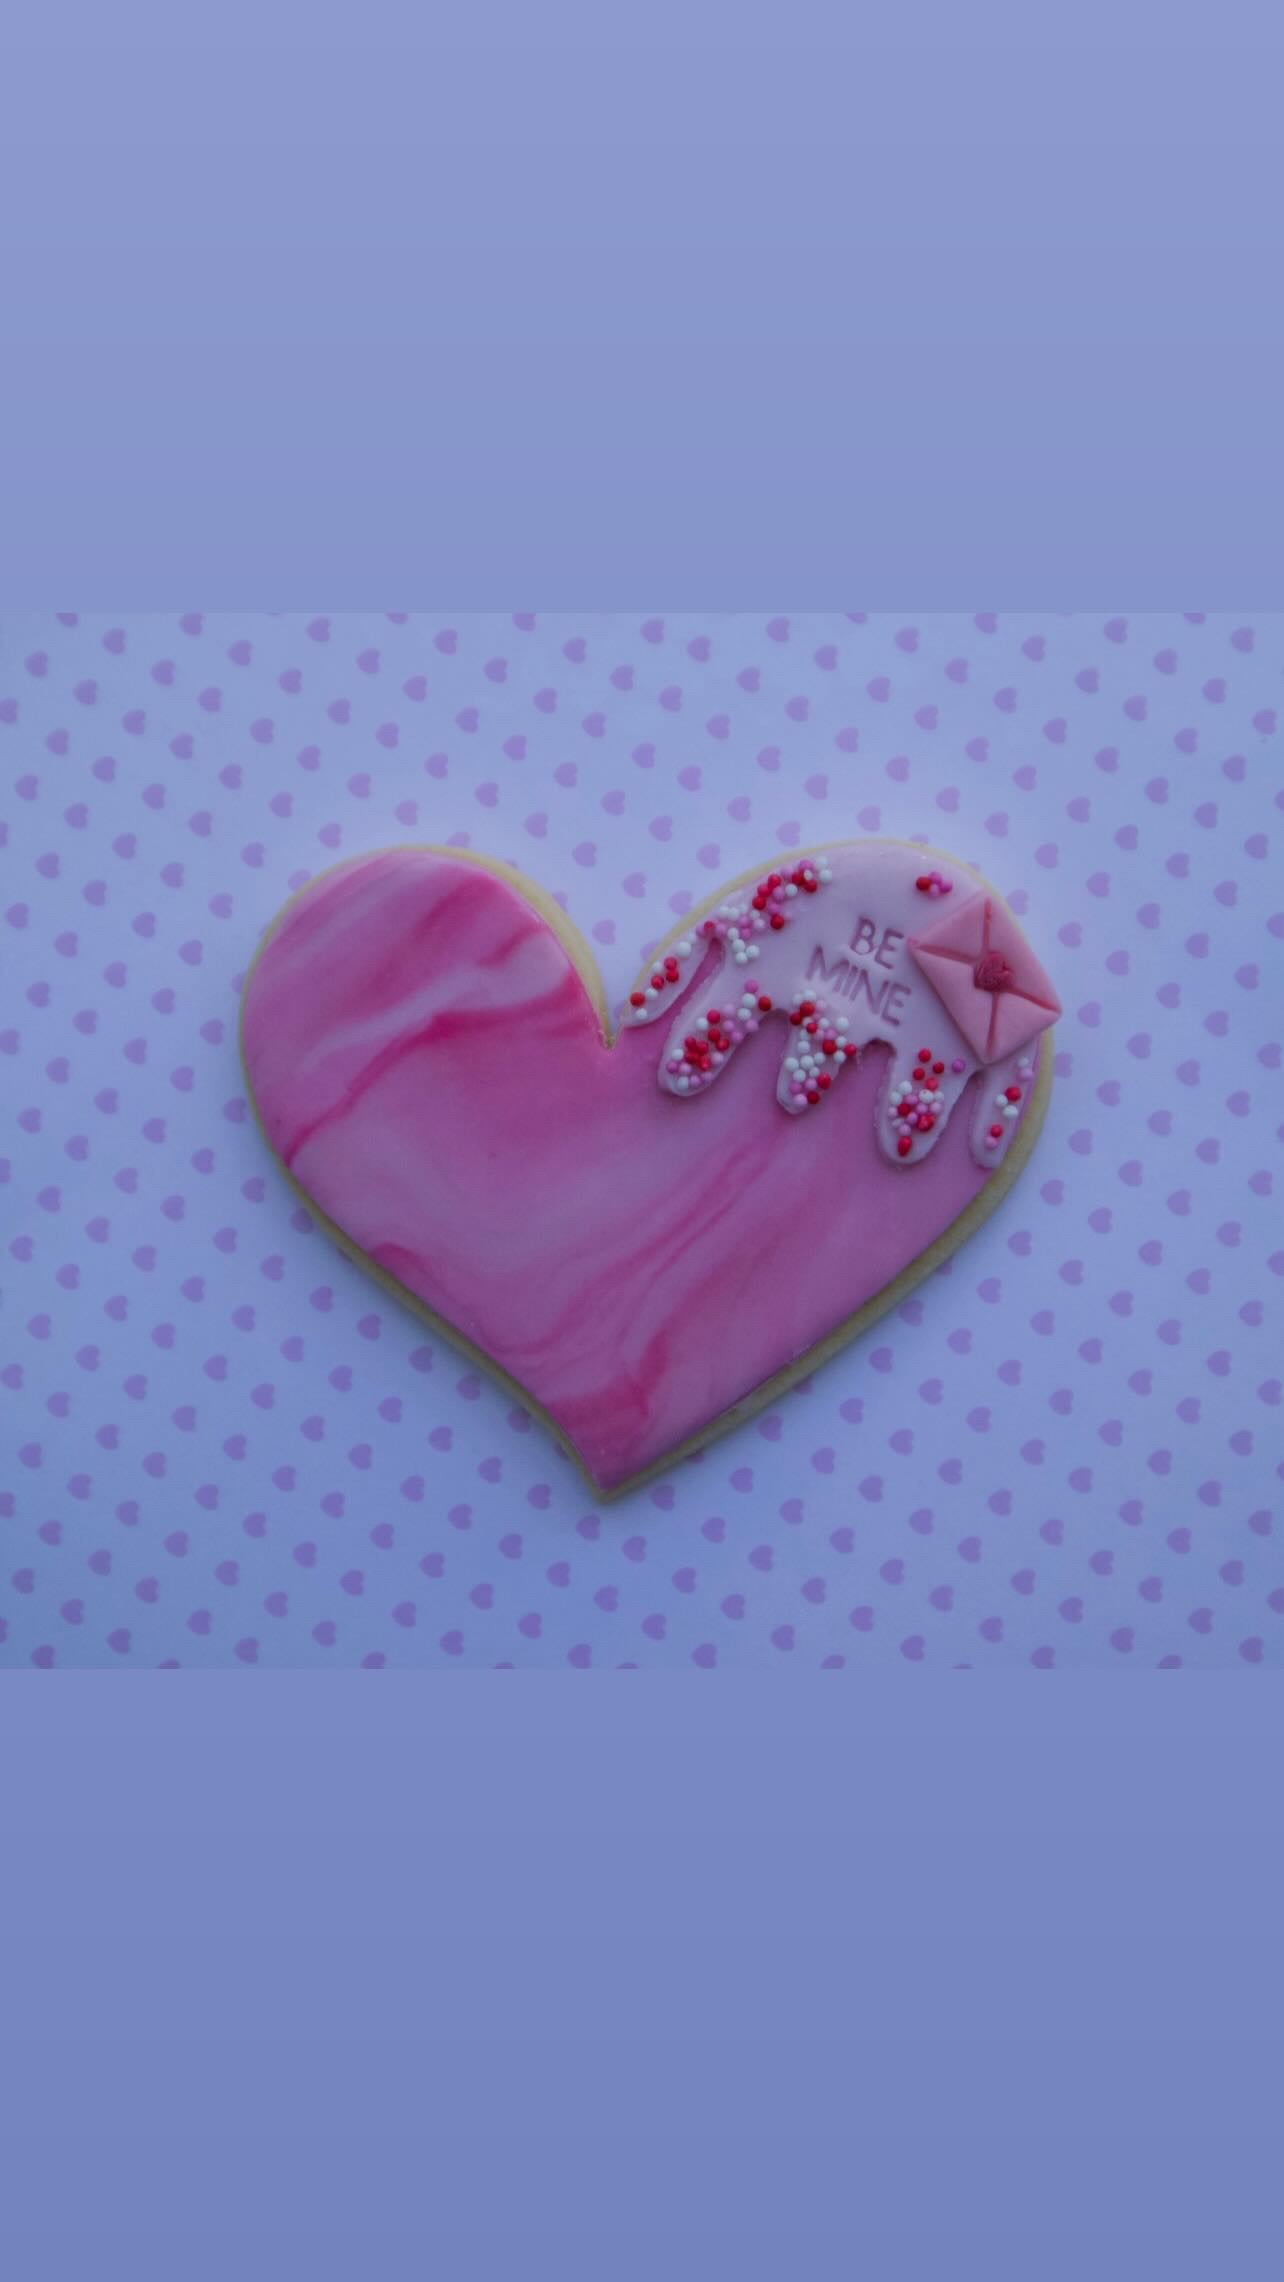 Heart shape - Cookie cutter